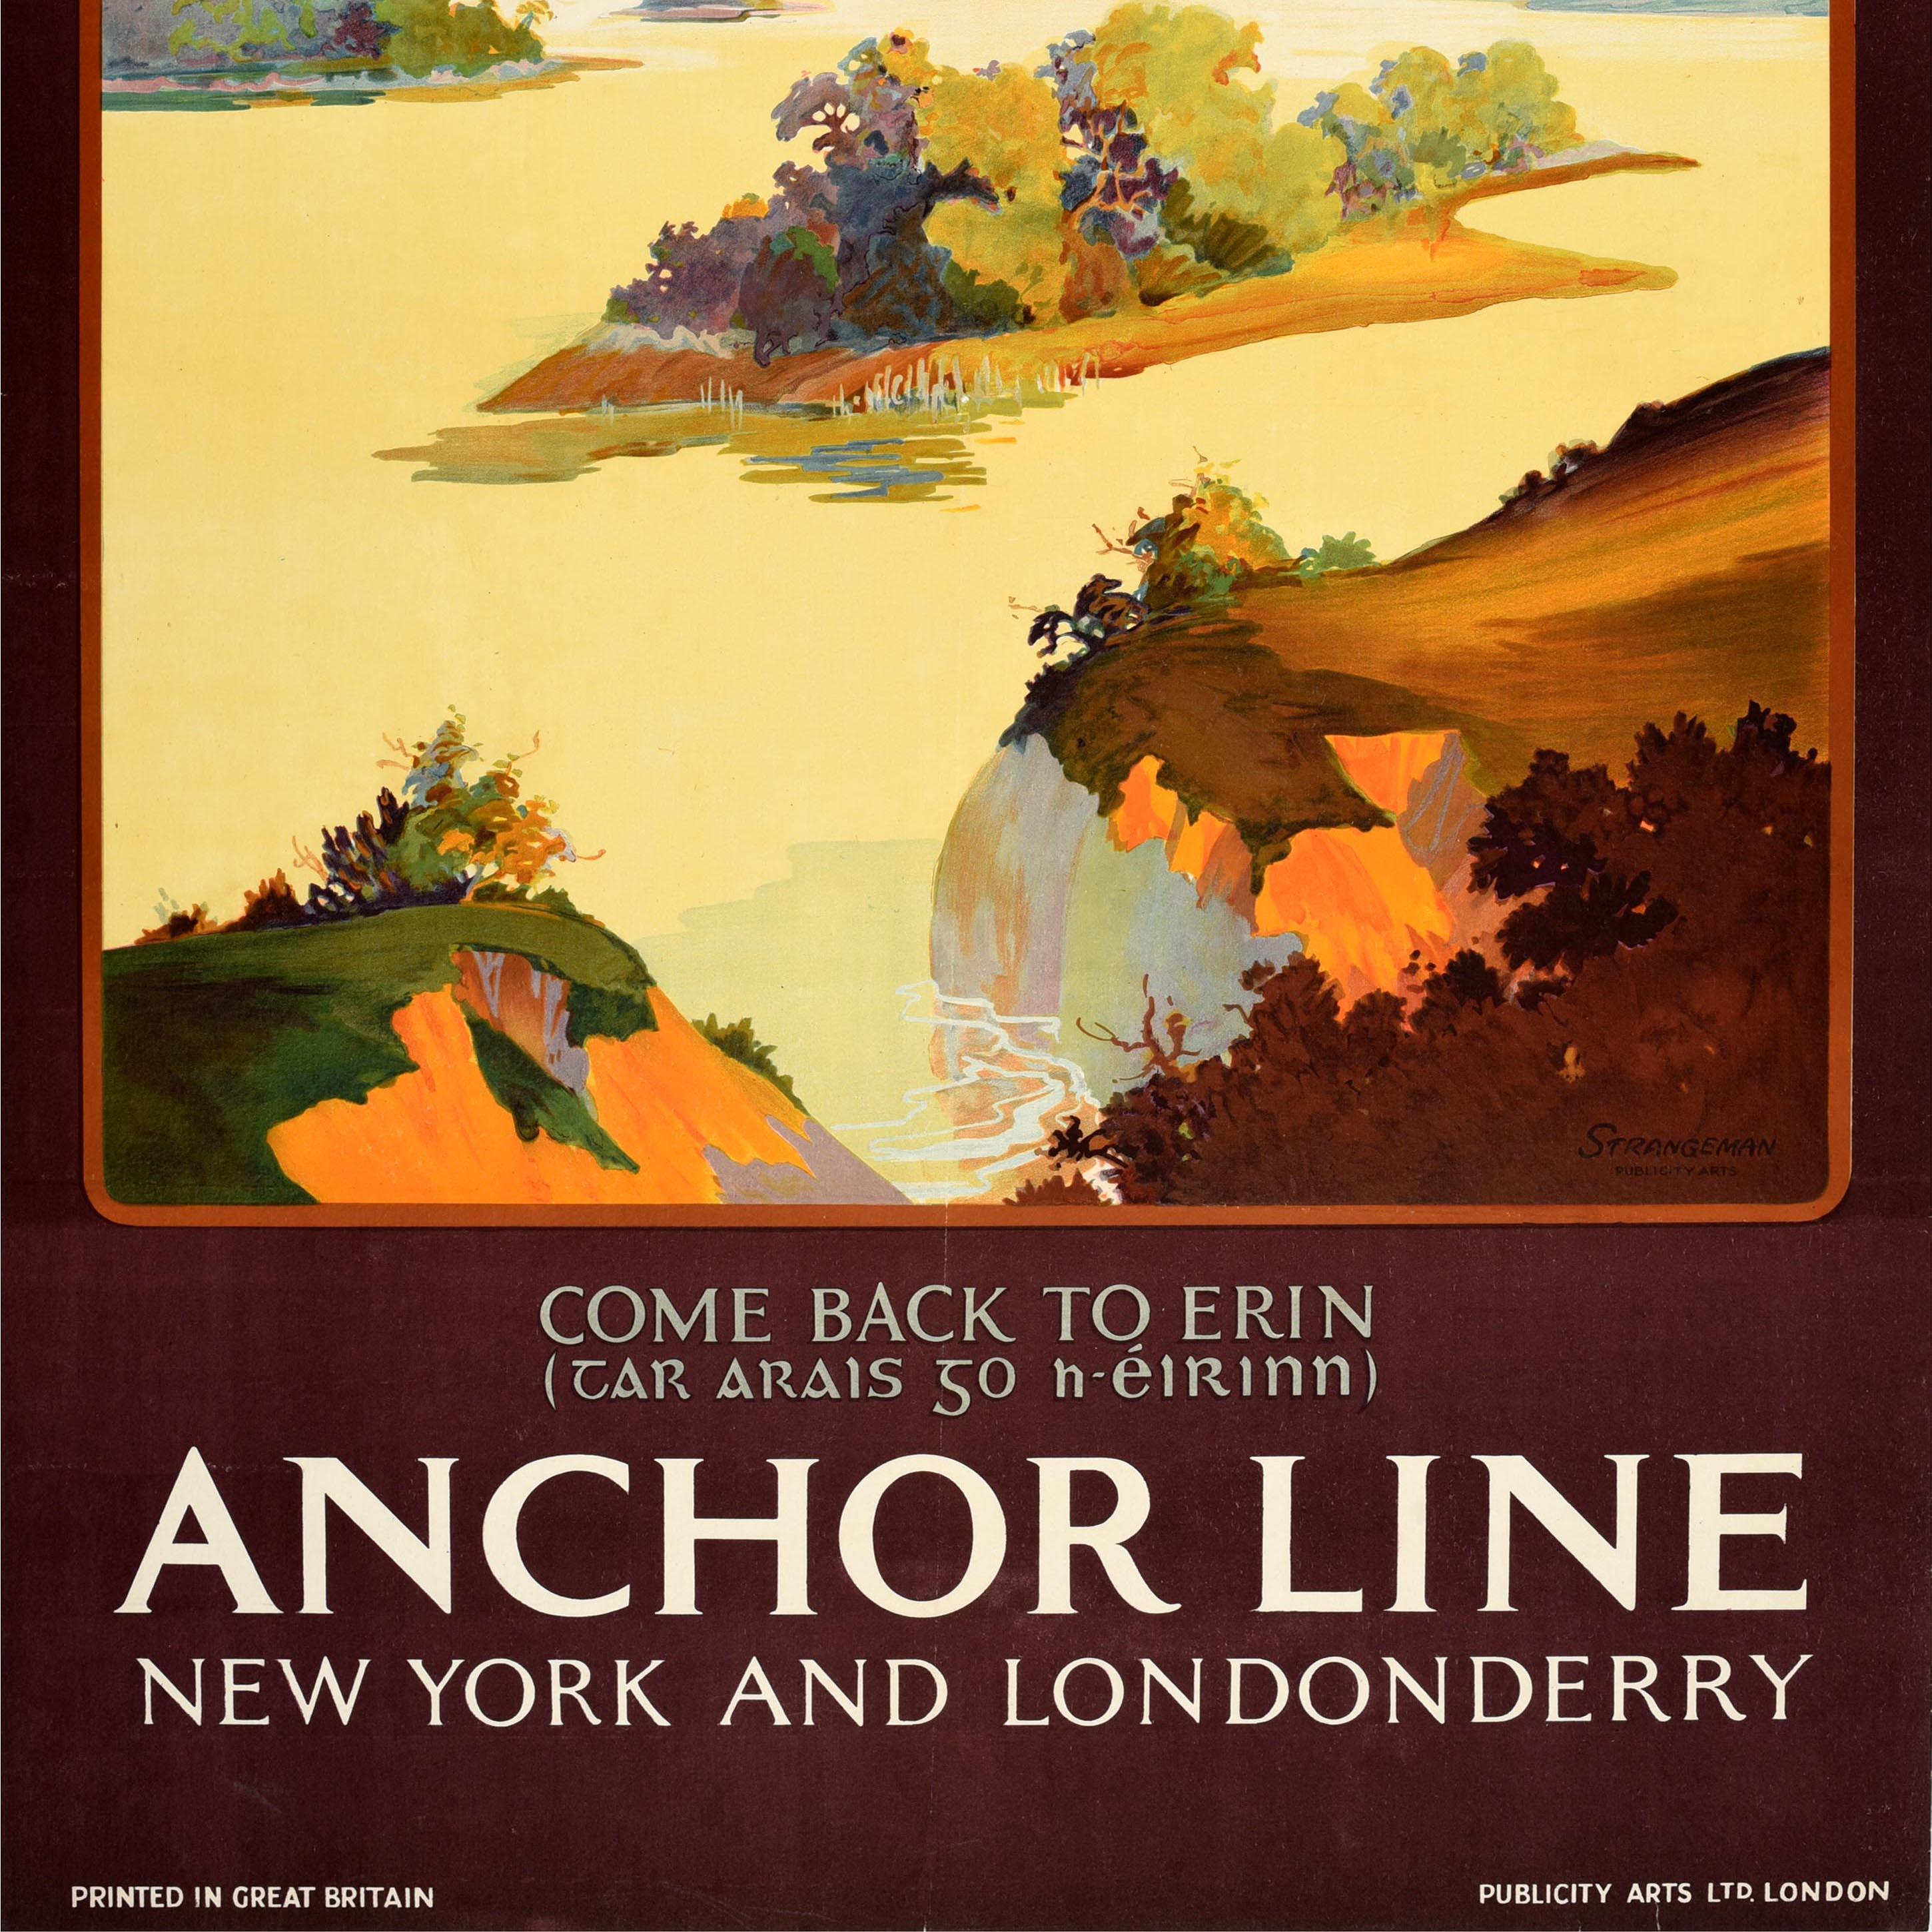 Original Vintage-Reiseplakat für Irland - Come Back to Erin - von Anchor Line New York and Londonderry - Das Motiv zeigt eine Seeszene mit sanften Hügeln im Hintergrund, eingerahmt von einem kastanienbraunen Rahmen mit weißer und grüner Schrift.